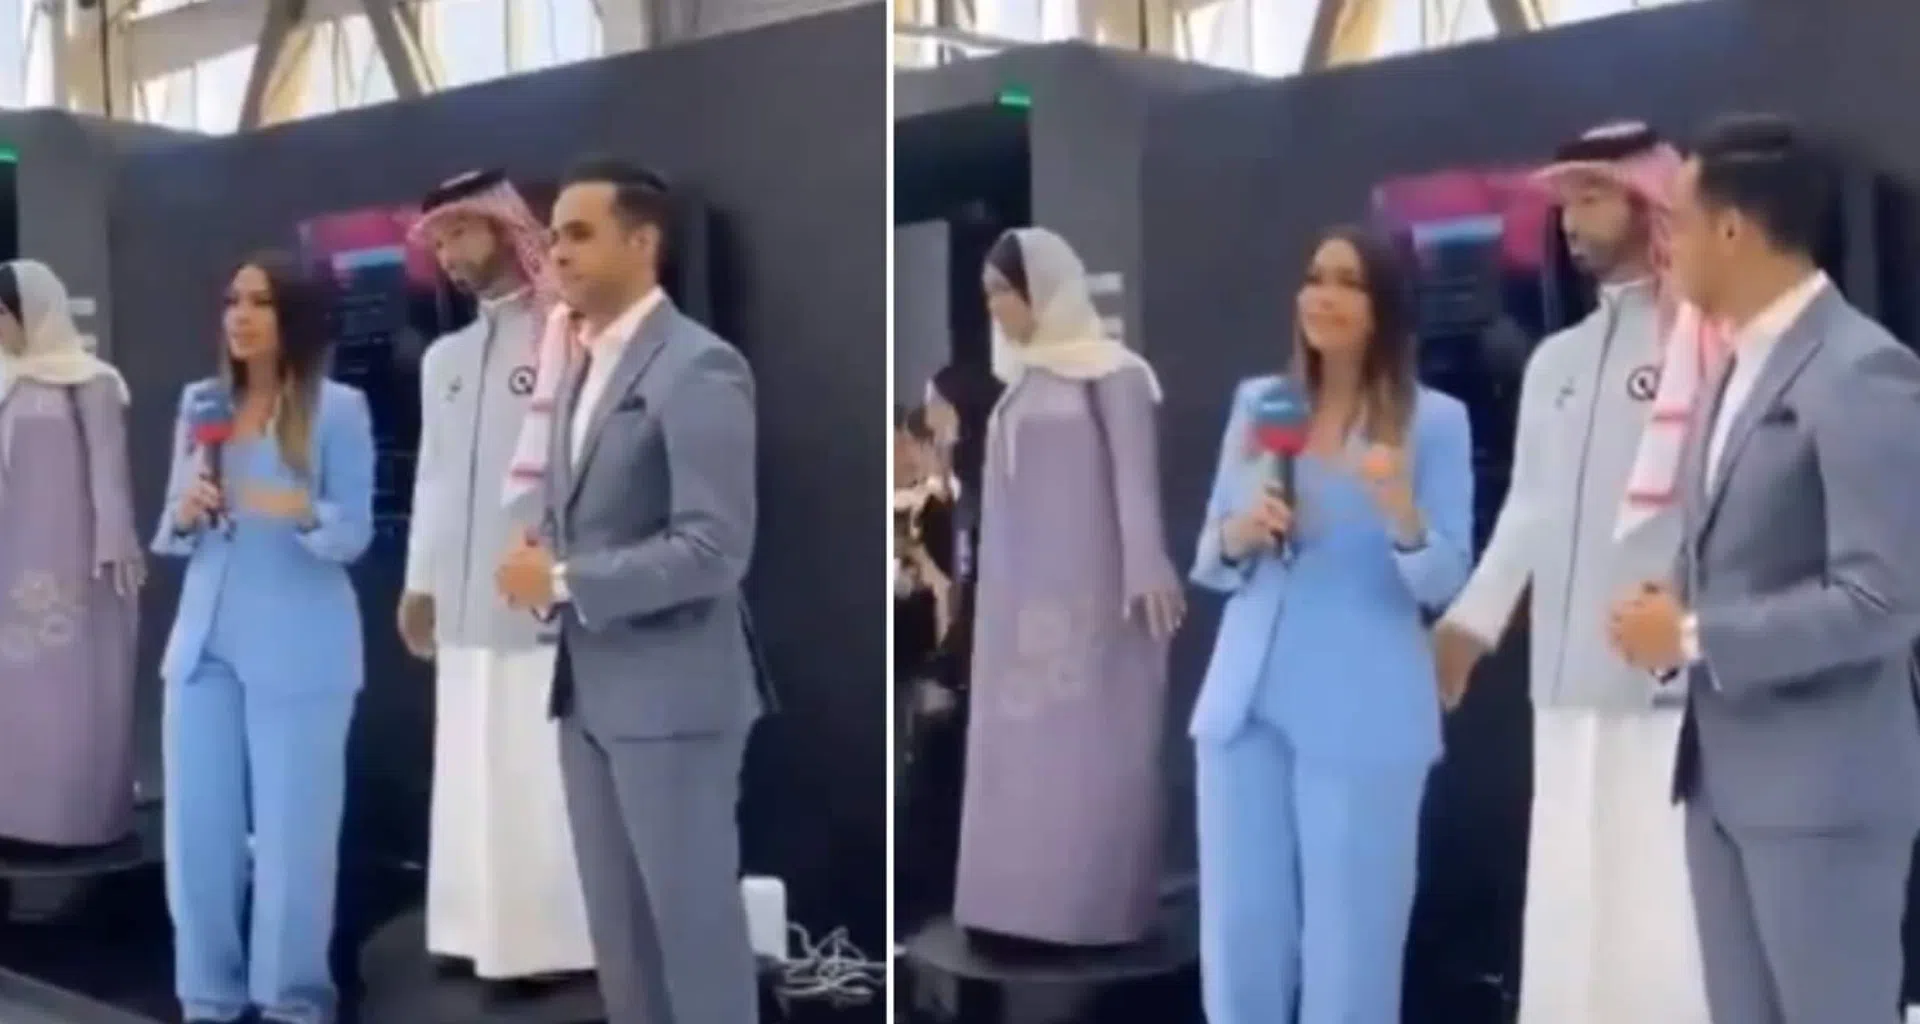 Vídeo com robô saudita tocando repórter de forma inadequada viraliza e provoca indignação. Internautas comentaram vídeo com comportamento machista e esperam resposta de desenvolvedora sobre incidente; assista